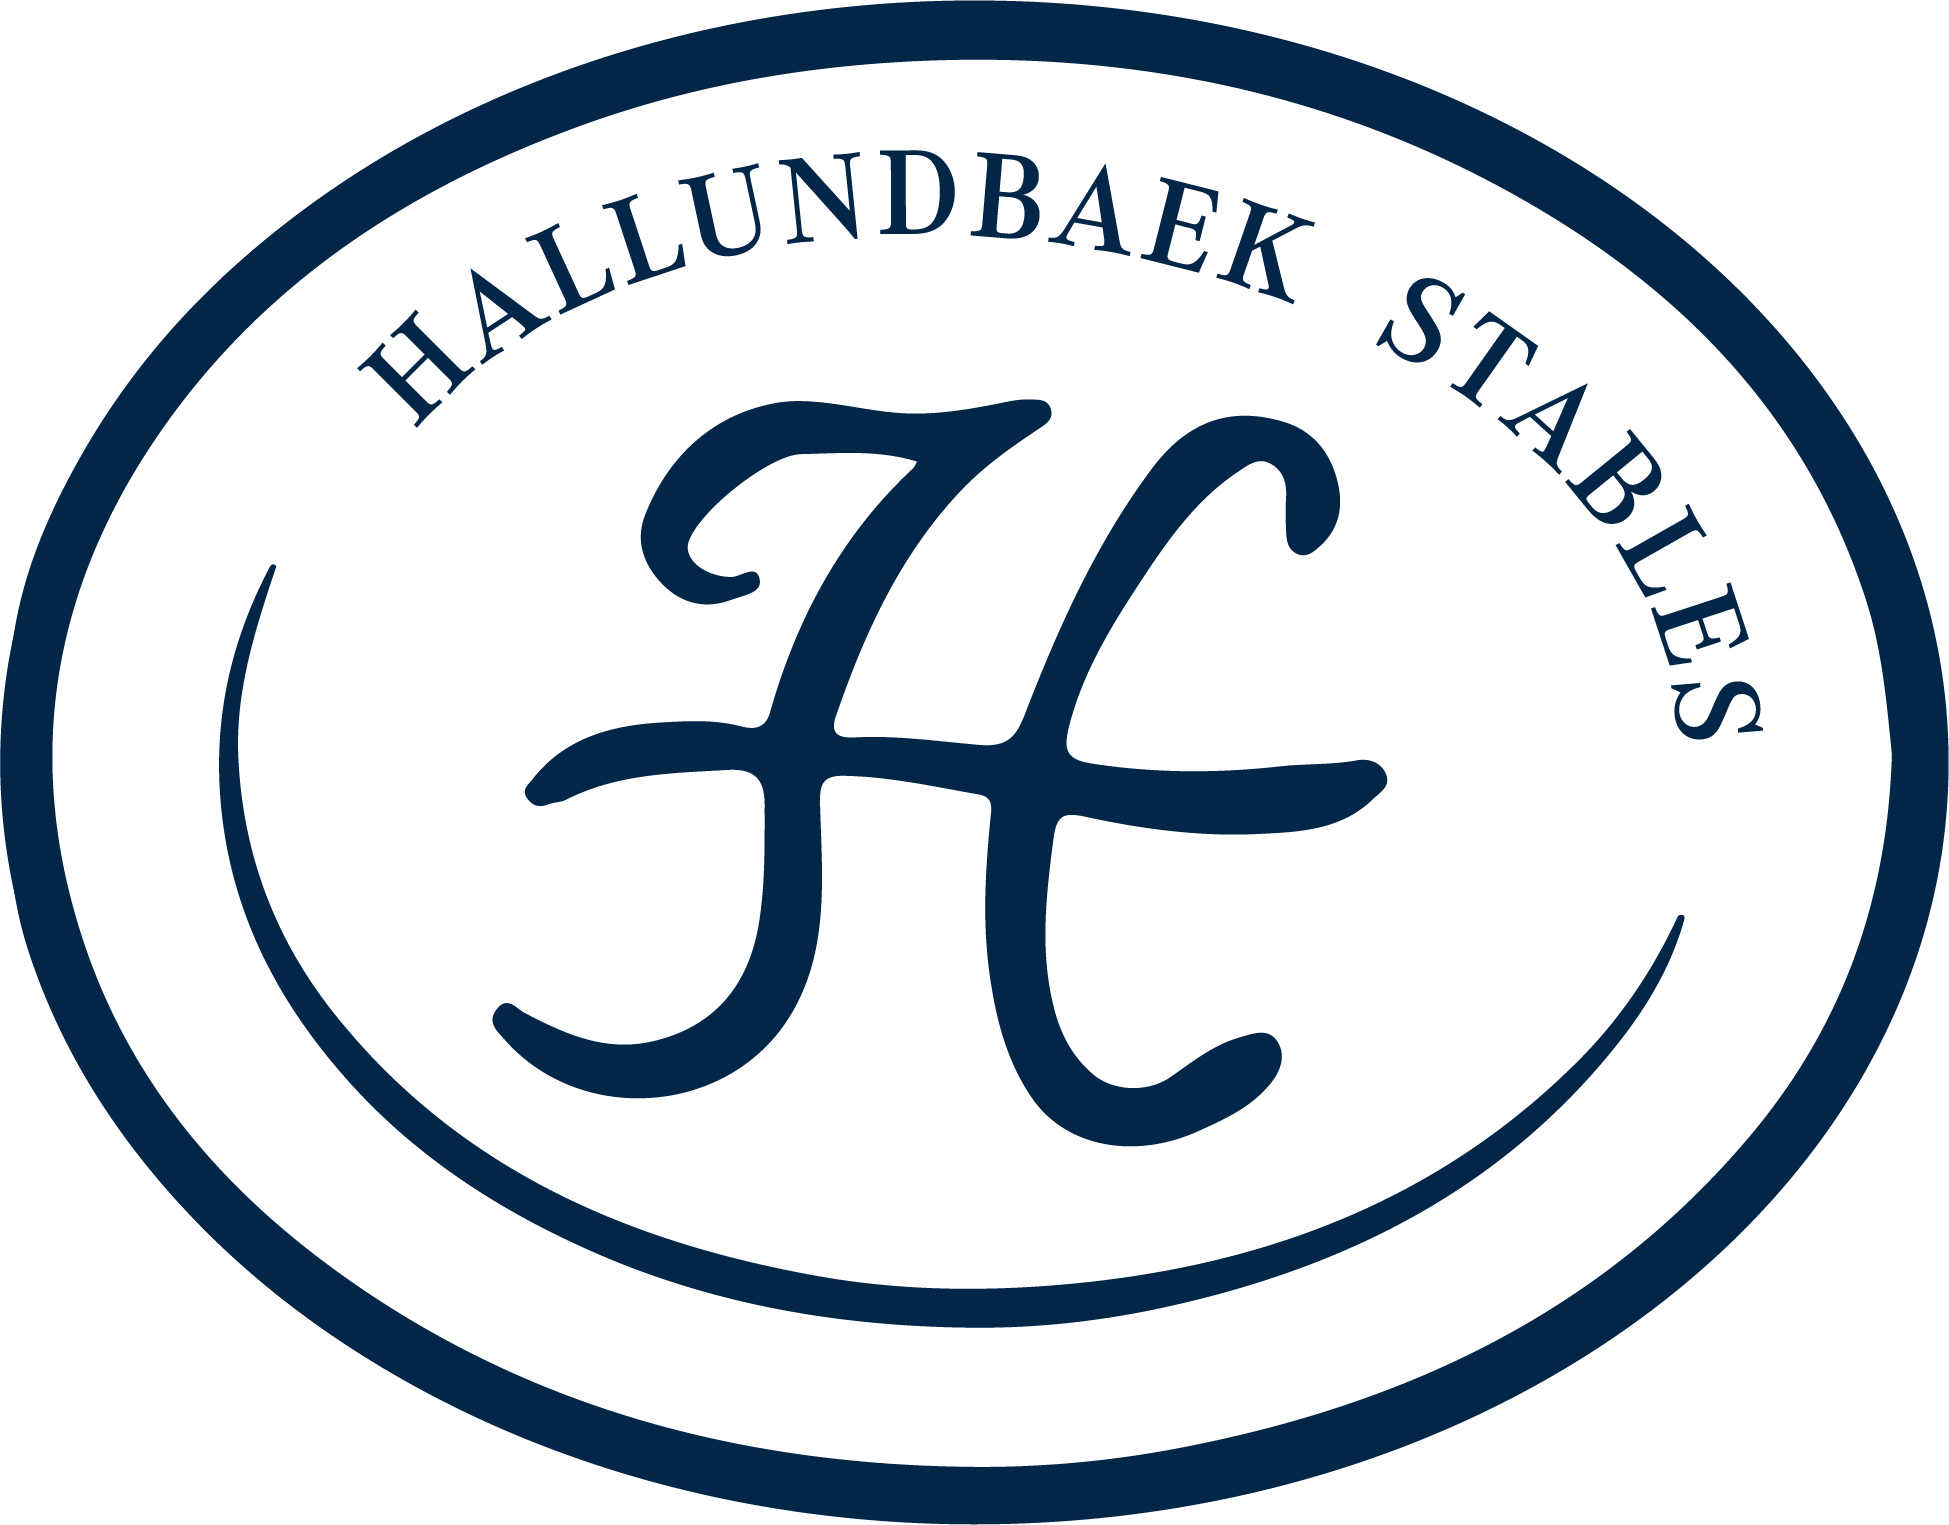 Hallundbaek Stables